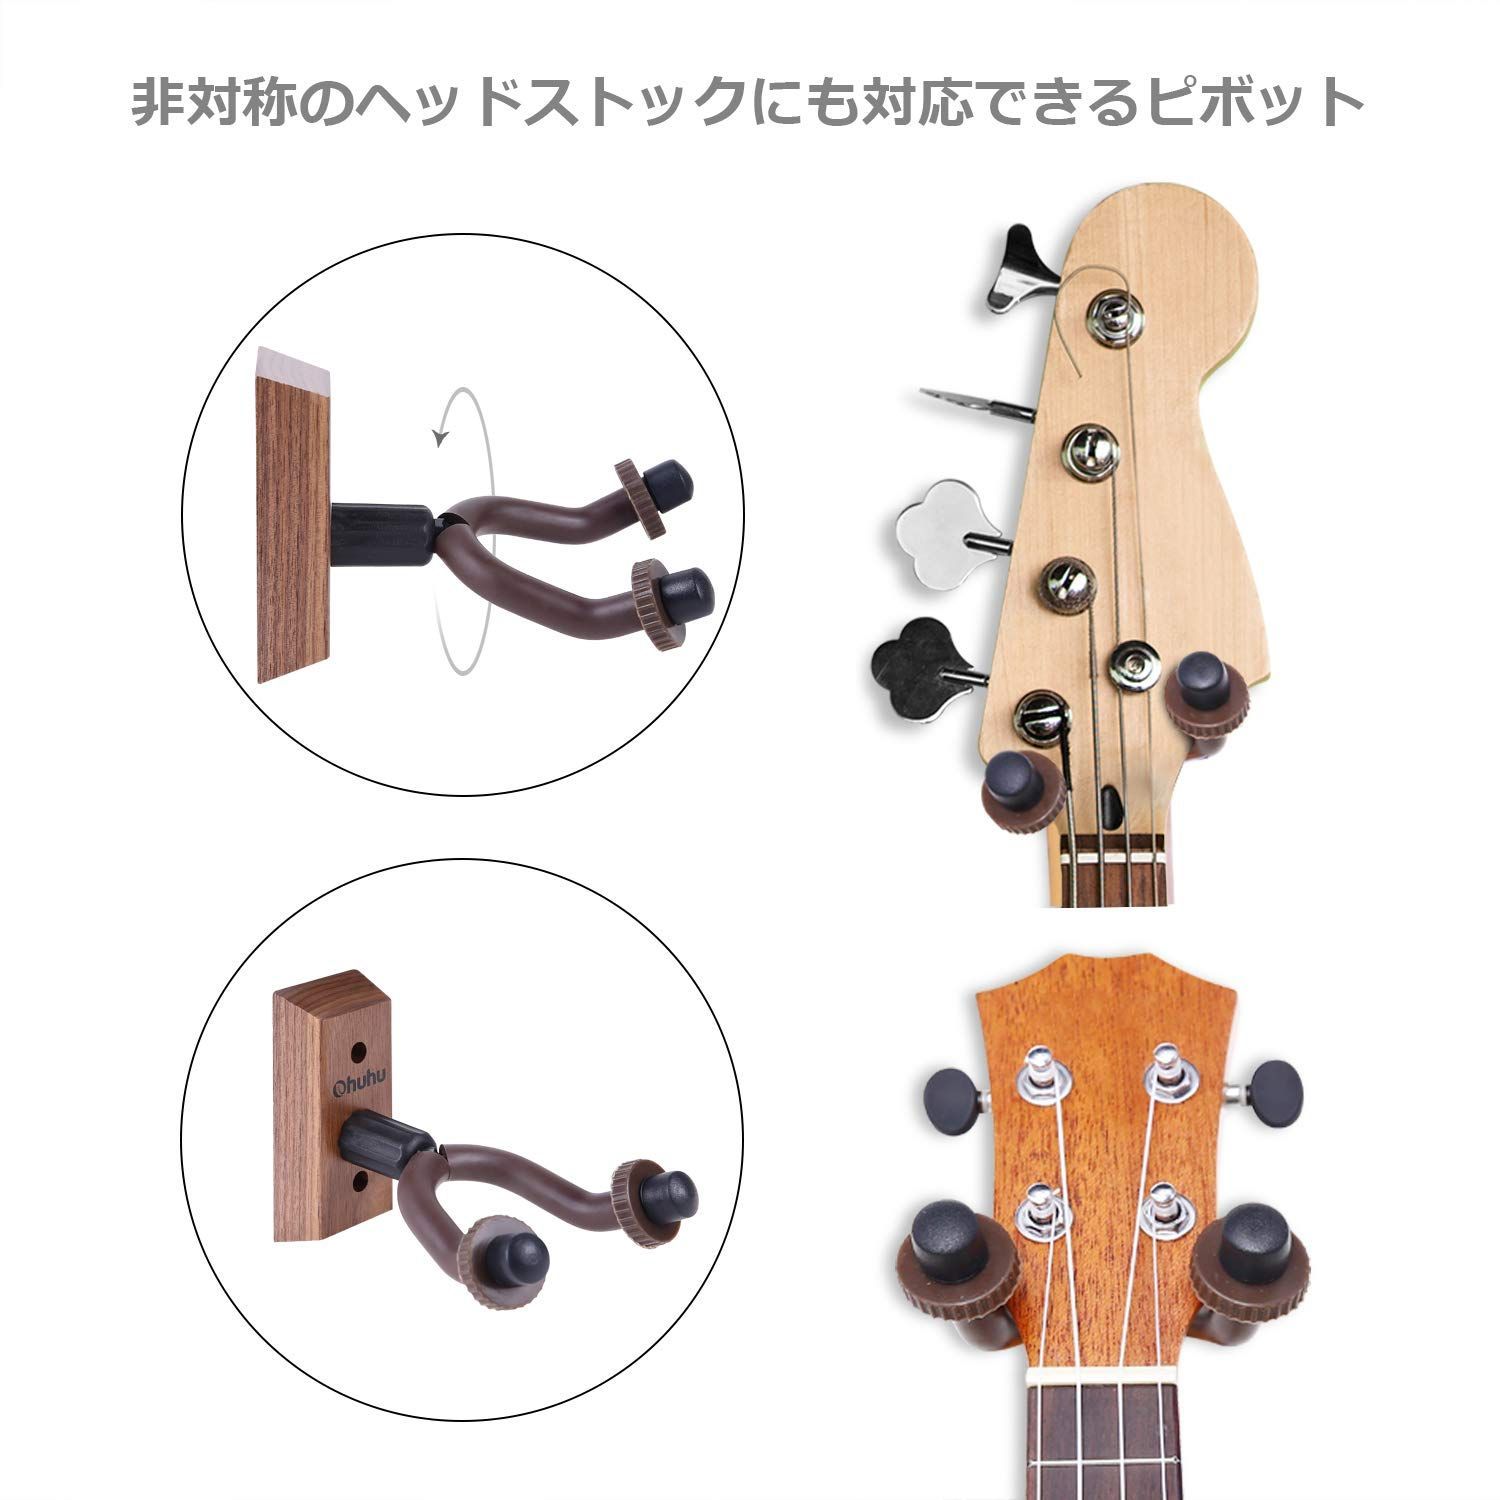 ギター ベース 3個セット アーム調節可能 ウクレレ ウクレレなどの楽器に ギターハンガー スタンド ネジ取り付け バイオリン ホルダー マンドリン  壁掛けフック 品質保証 バイオリン